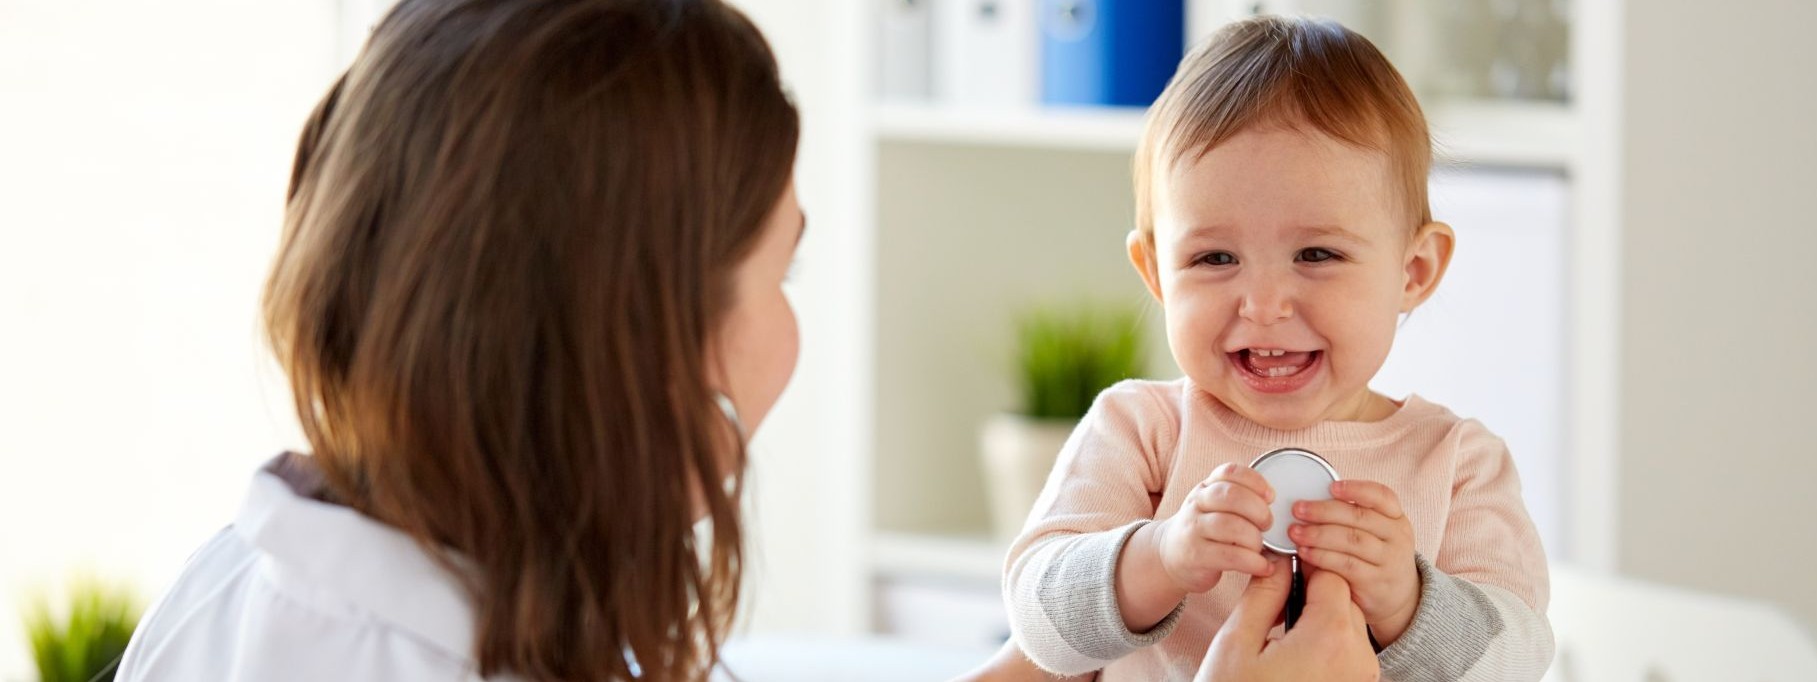 Ein etwa einjähriges Kind wird von einer Kinderärztin mit dem Stethoskop untersucht. Das Kleinkind lacht ausgiebig.